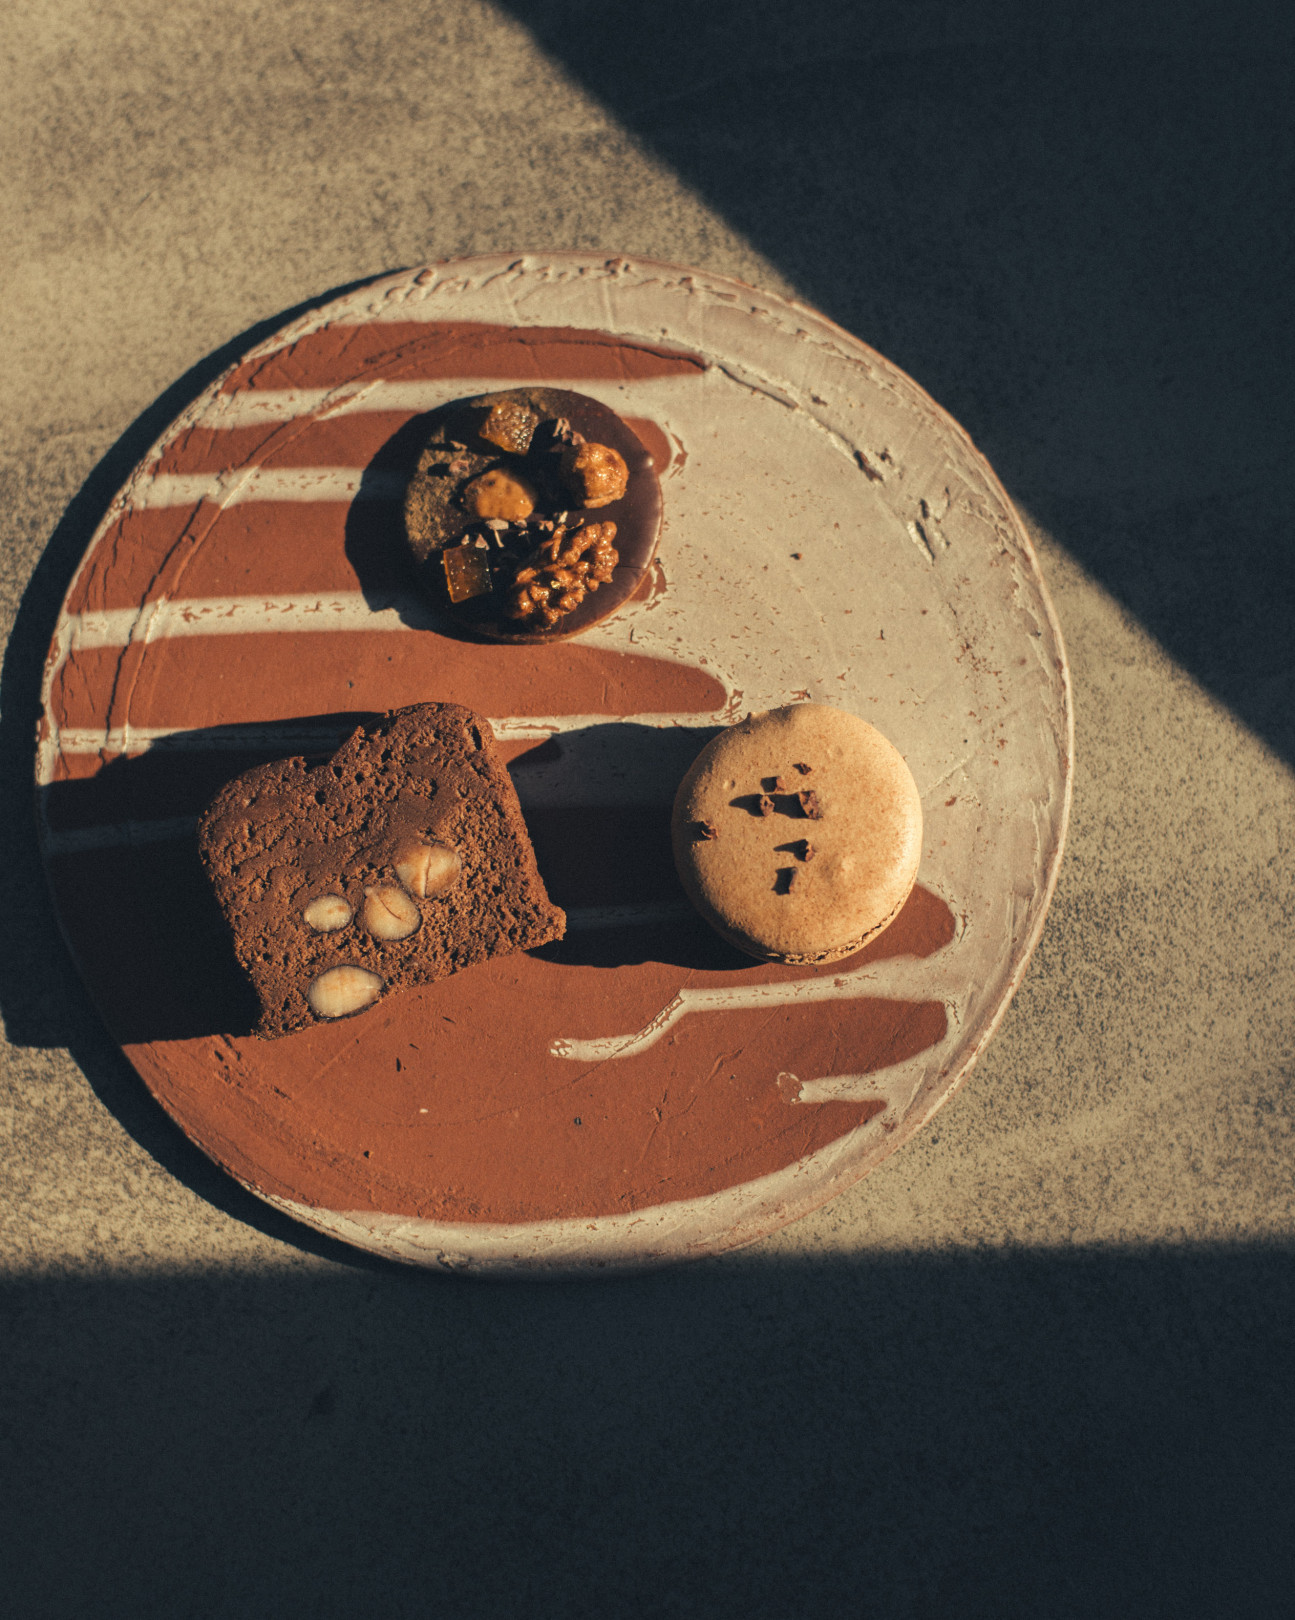 （左）黒豆のチョコレートケーキ  （中）ゆずと焙じ茶のチョコレートクッキー （右）発酵ベリーのチョコレートマカロン